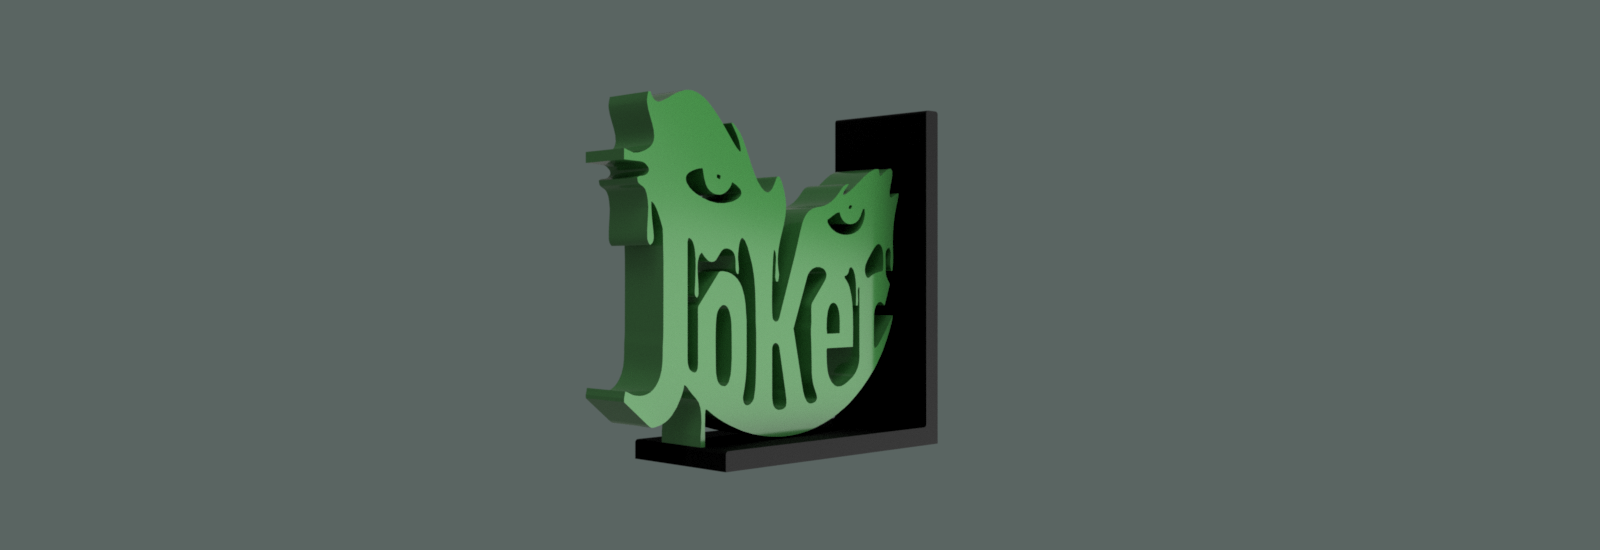 Joker Bookholder